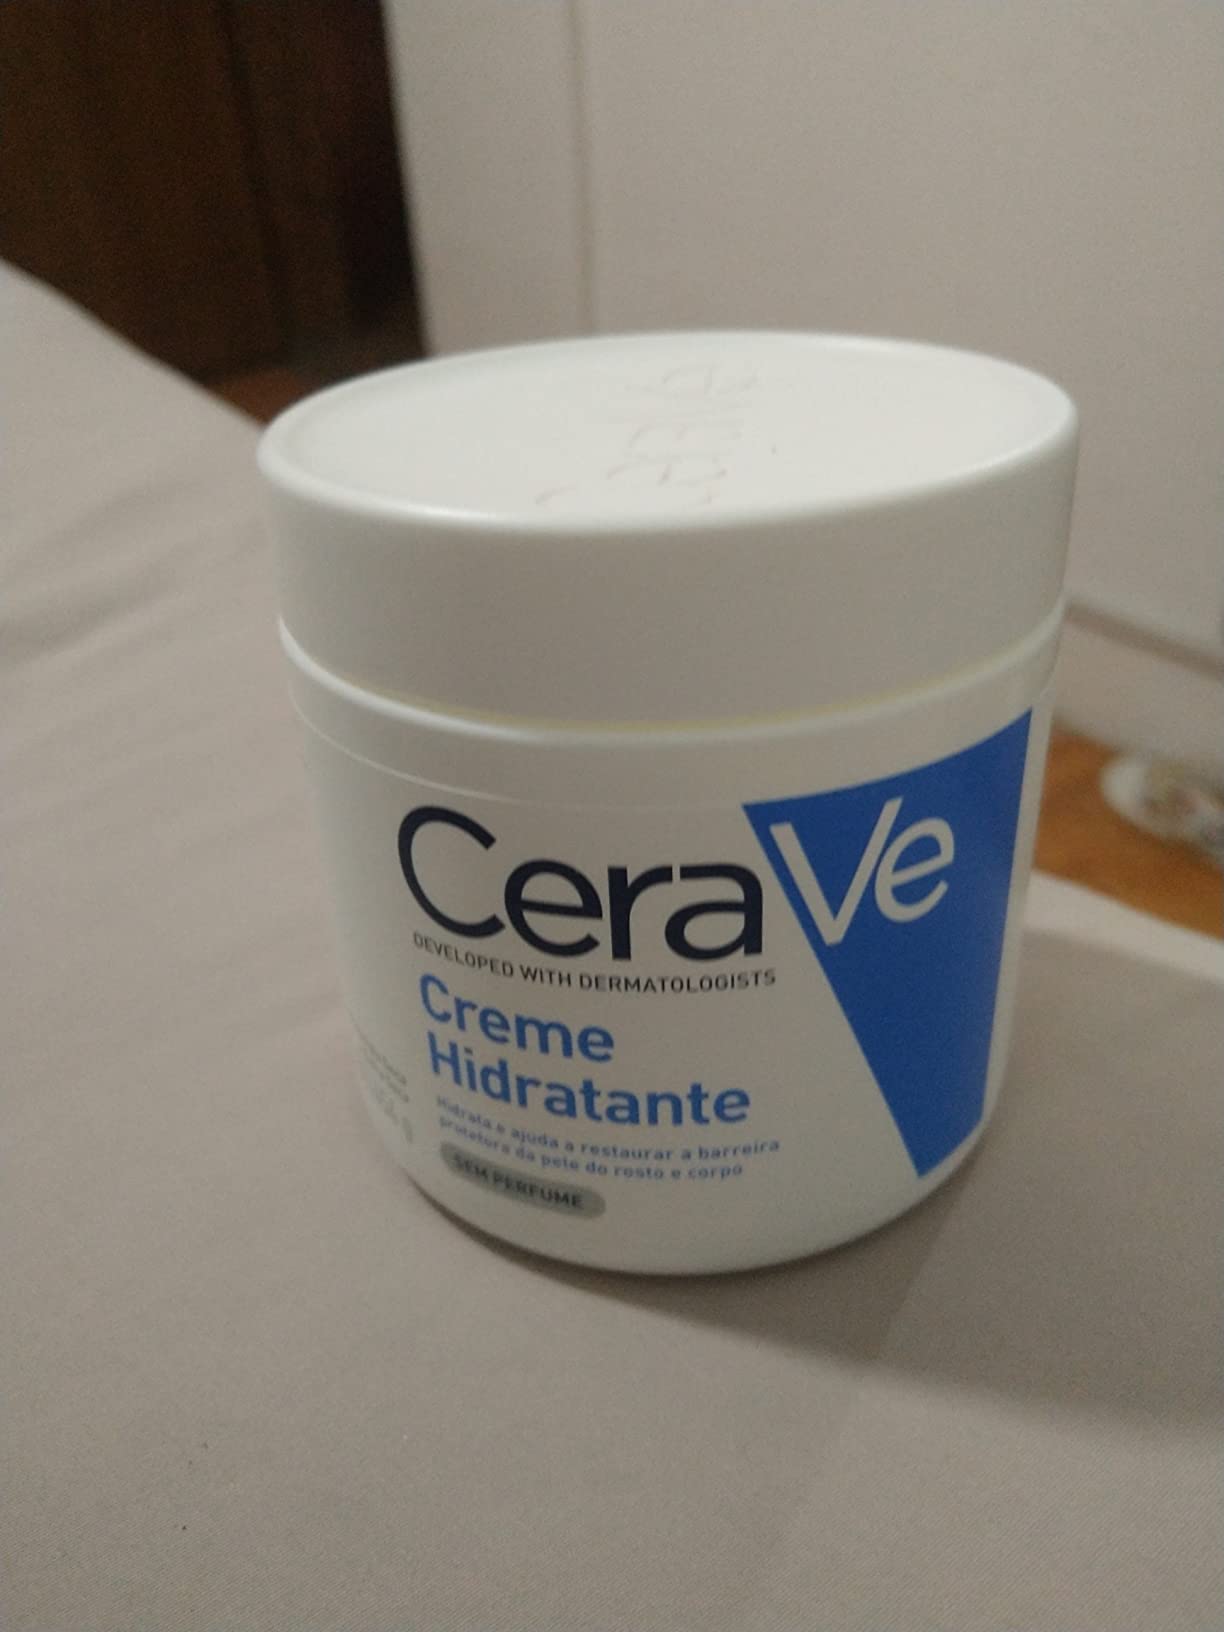 Cerave Creme Hidratante 453g